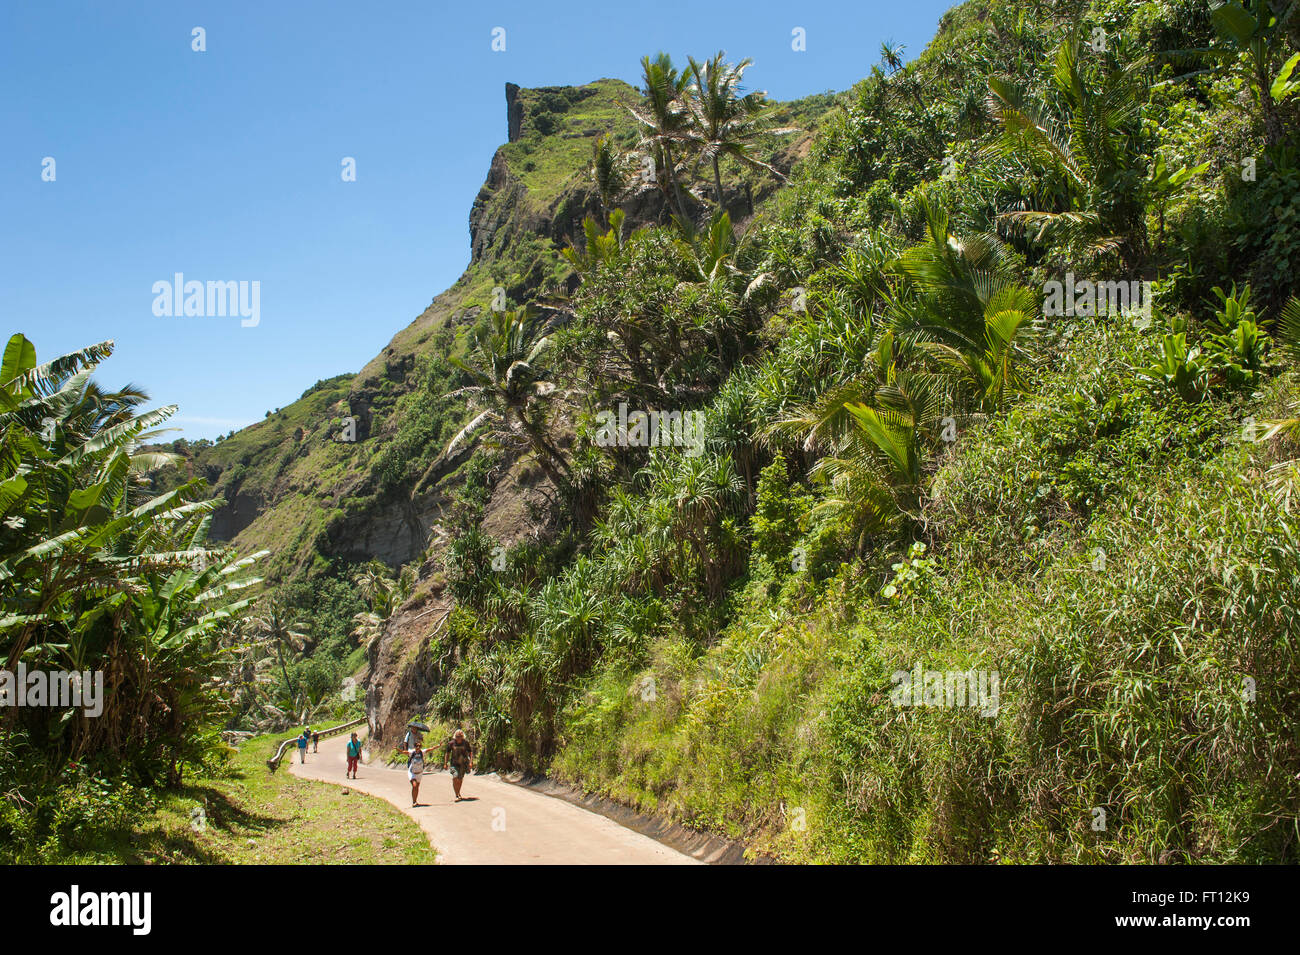 La gente che camminava su un sentiero attraverso una foresta tropicale, Pitcairn, Pitcairn gruppo di isole, British territorio di oltremare, Sud Pacifico Foto Stock